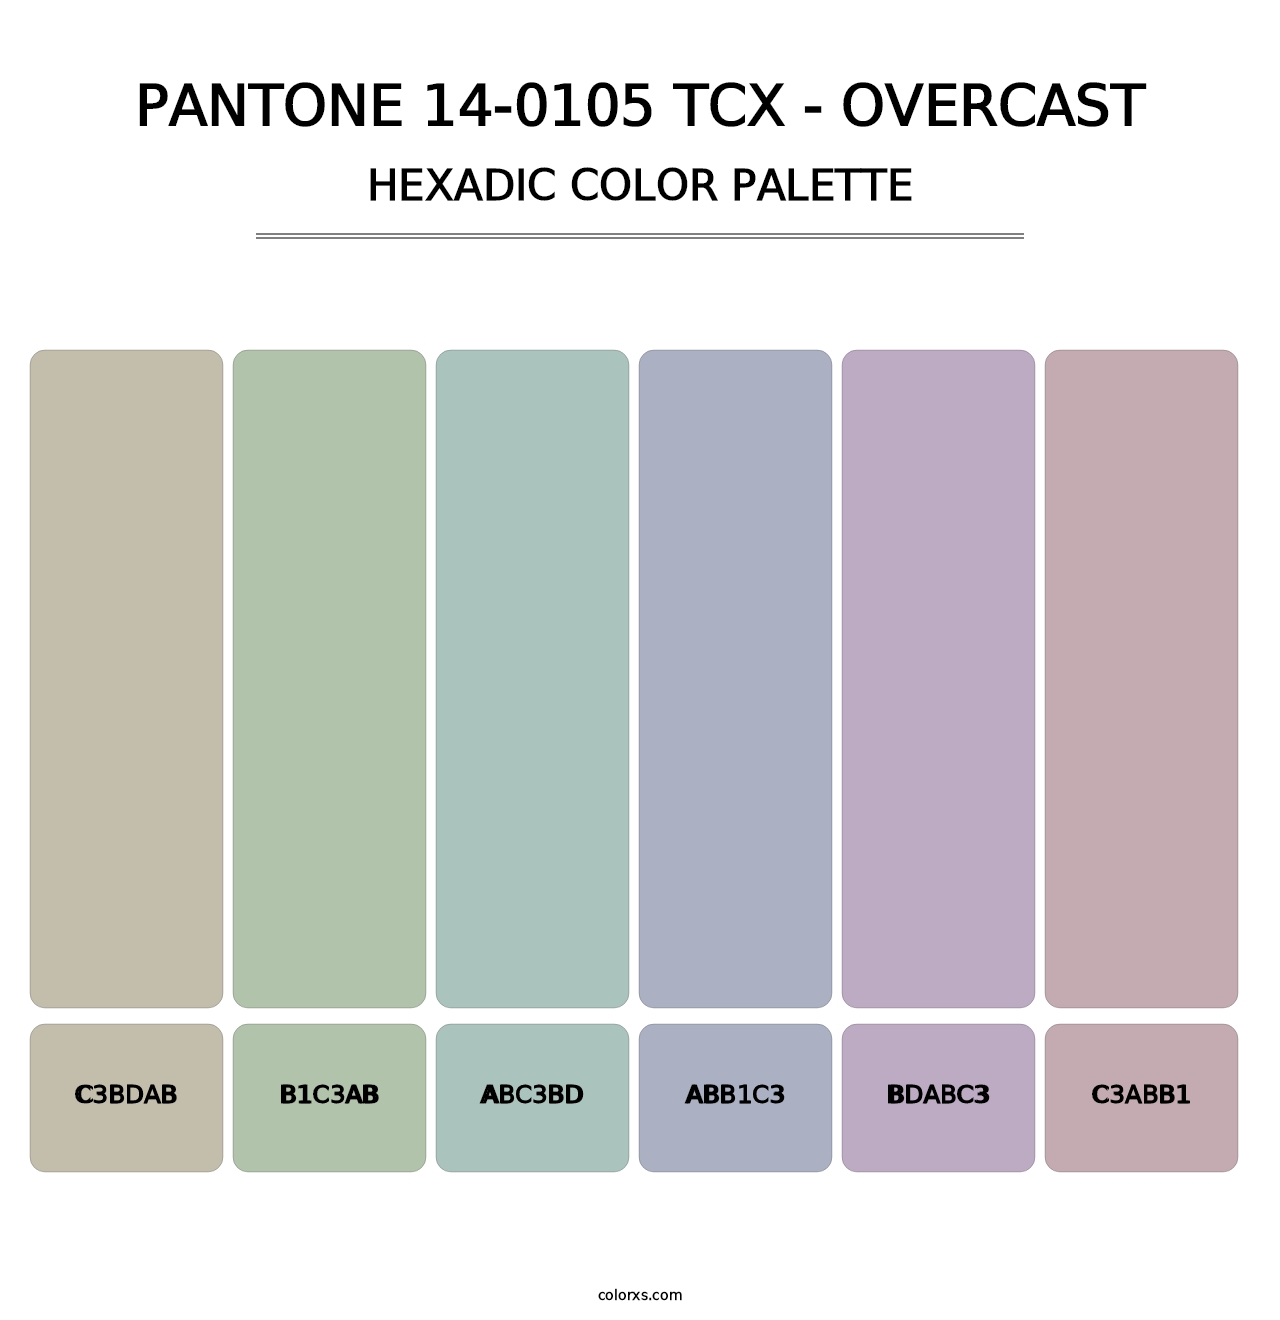 PANTONE 14-0105 TCX - Overcast - Hexadic Color Palette